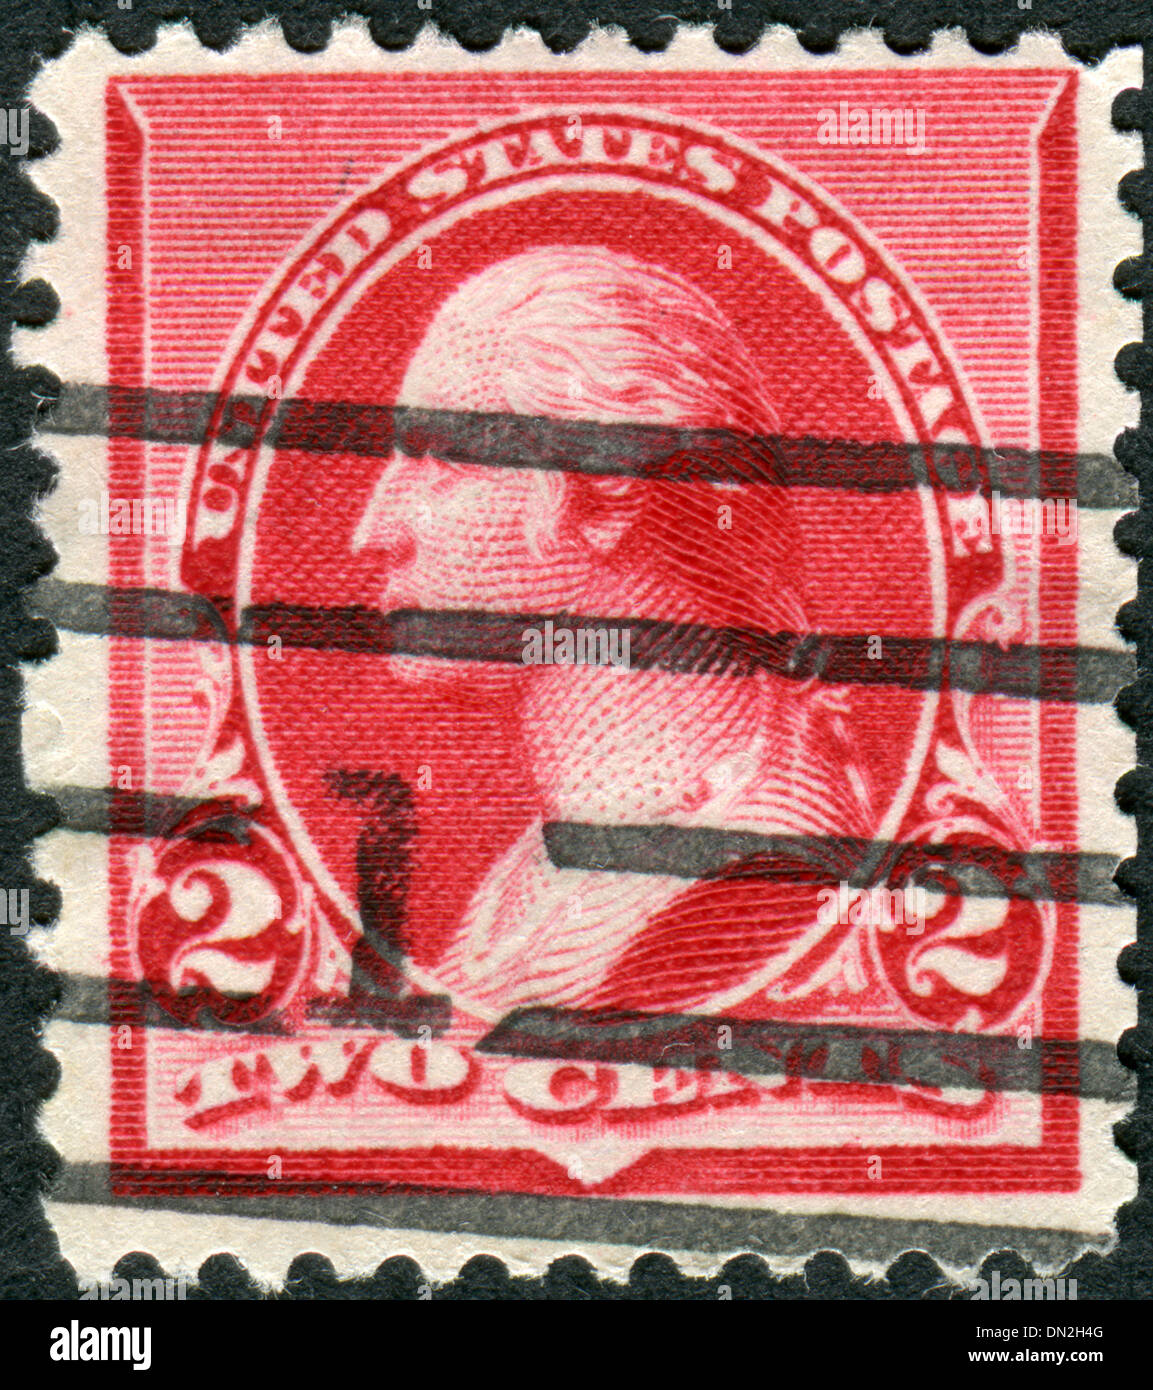 Sello impreso en los Estados Unidos, un retrato del primer Presidente de los Estados Unidos, fundador de los Estados Unidos de América, George Washington Foto de stock